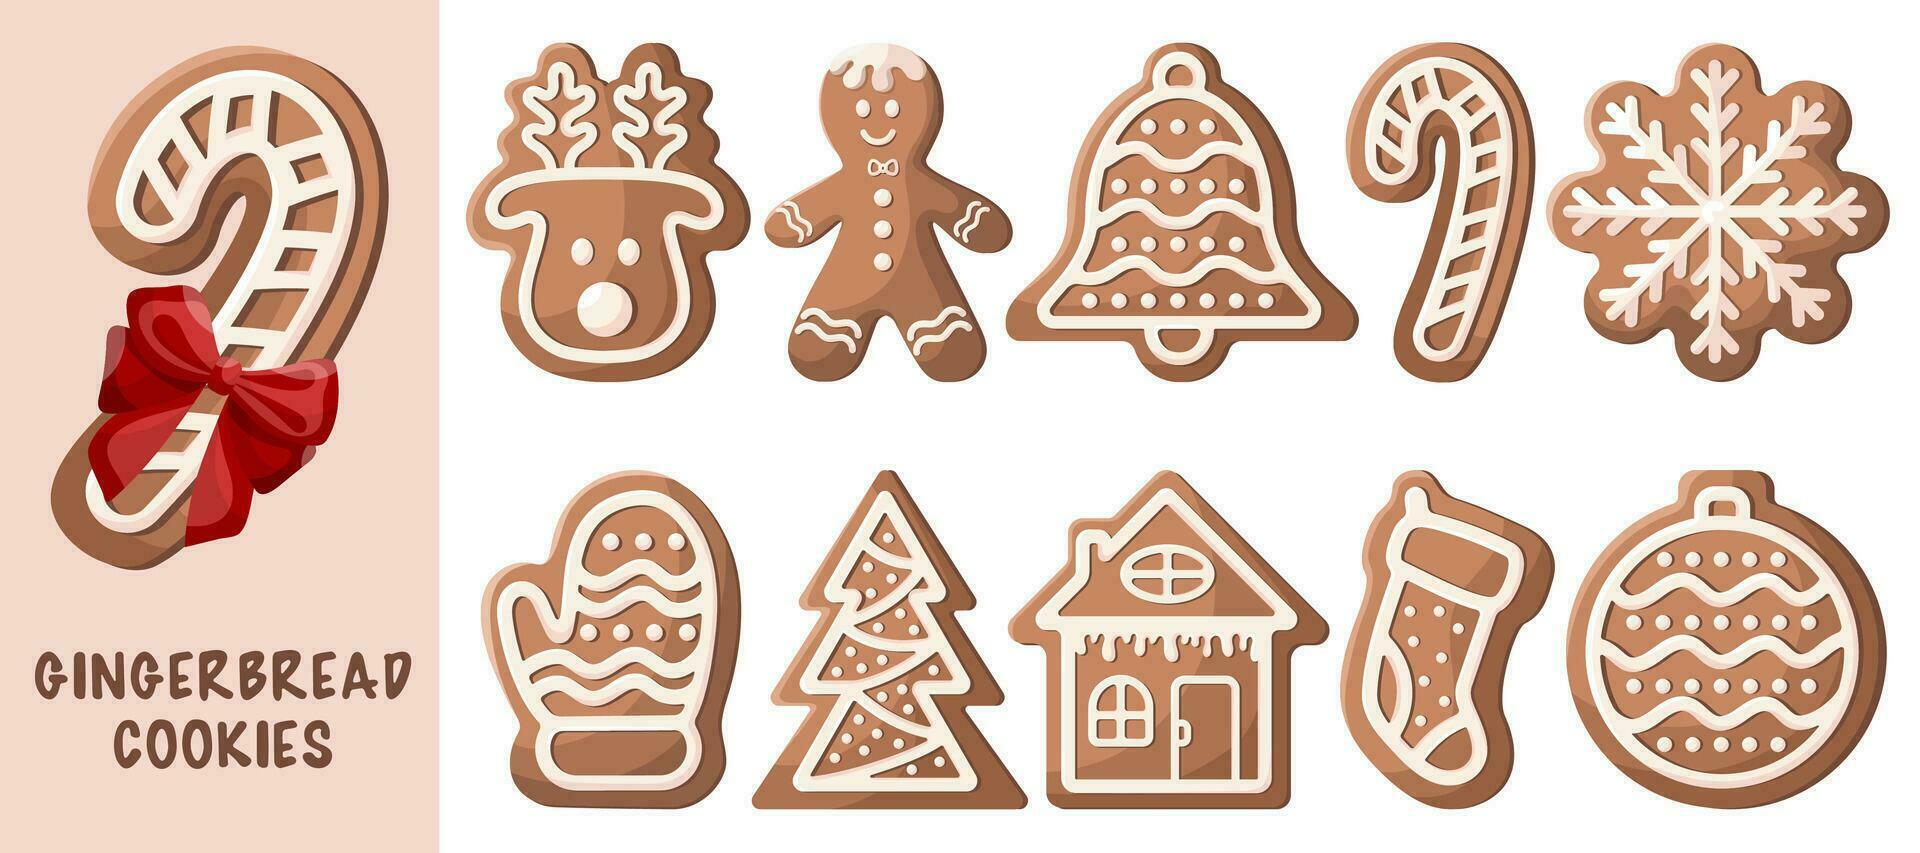 conjunto de dibujos animados vector ilustraciones de pan de jengibre galletas. invierno hecho en casa dulces en forma de casa, mitones, copos de nieve, pan de jengibre hombre, ciervo, campana, árbol, Navidad árbol juguete, dulce, calcetín.